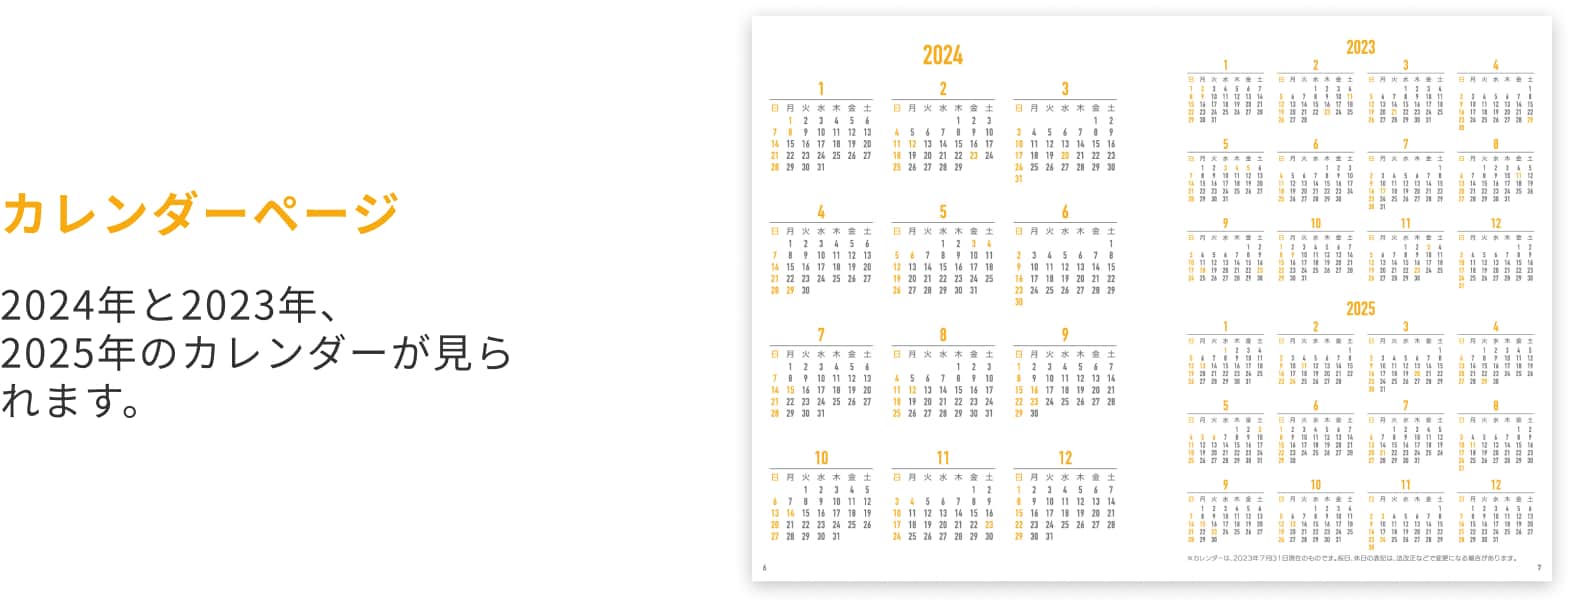 カレンダーページ 2024年と2023年、2025年のカレンダーが見られます。